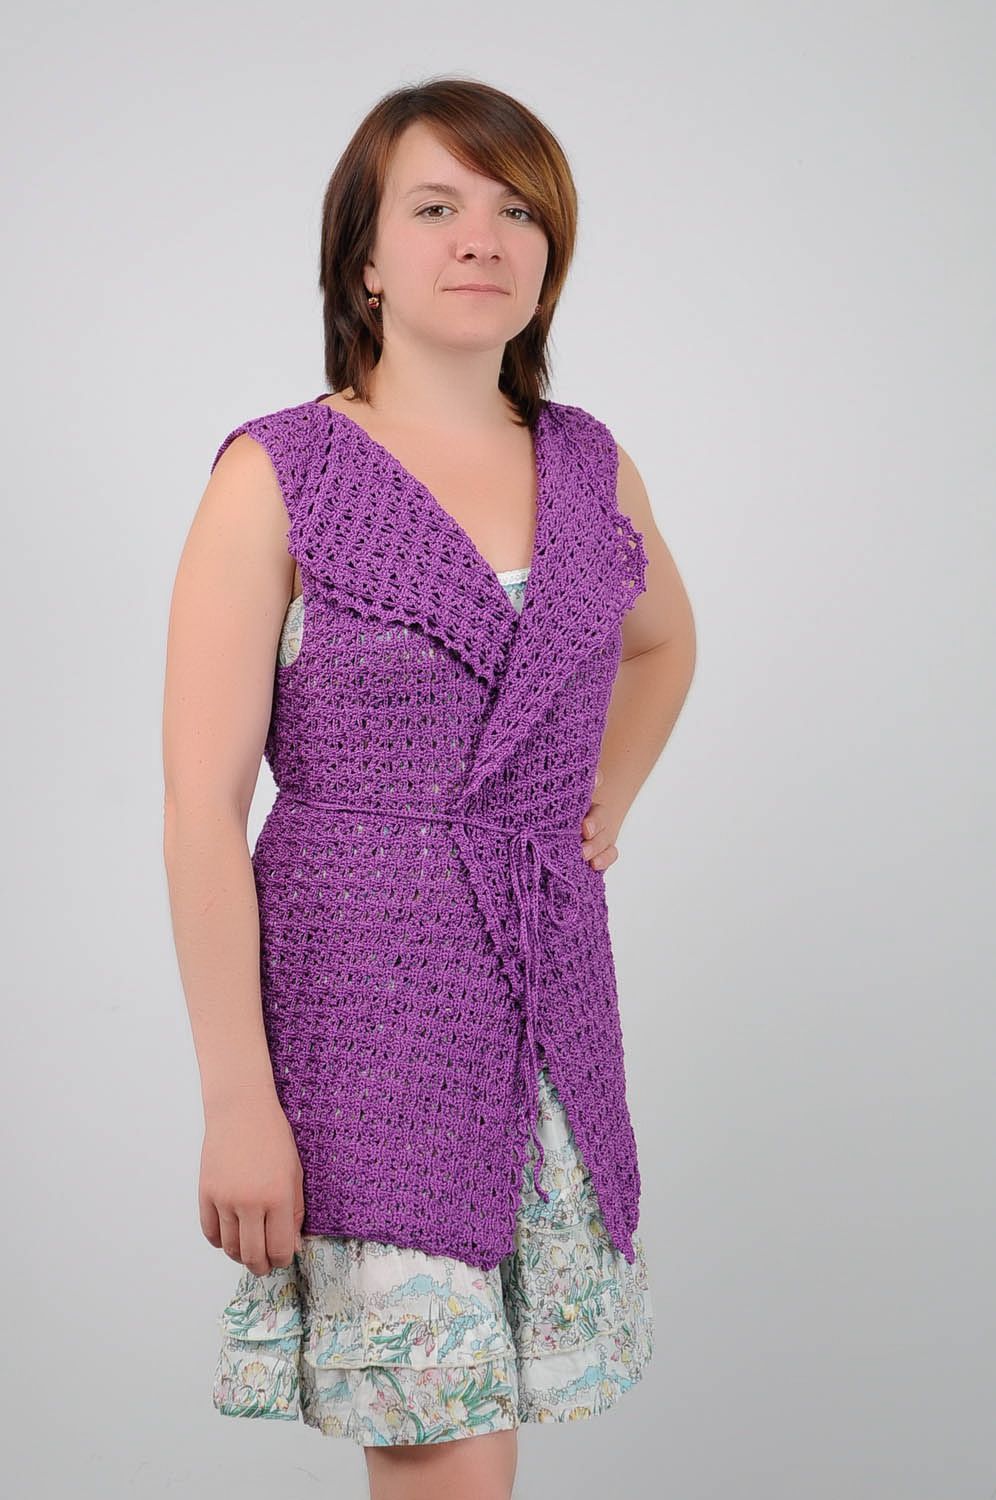 Gilet a maglia da donna fatto a mano gilet donna in colore viola bello foto 1